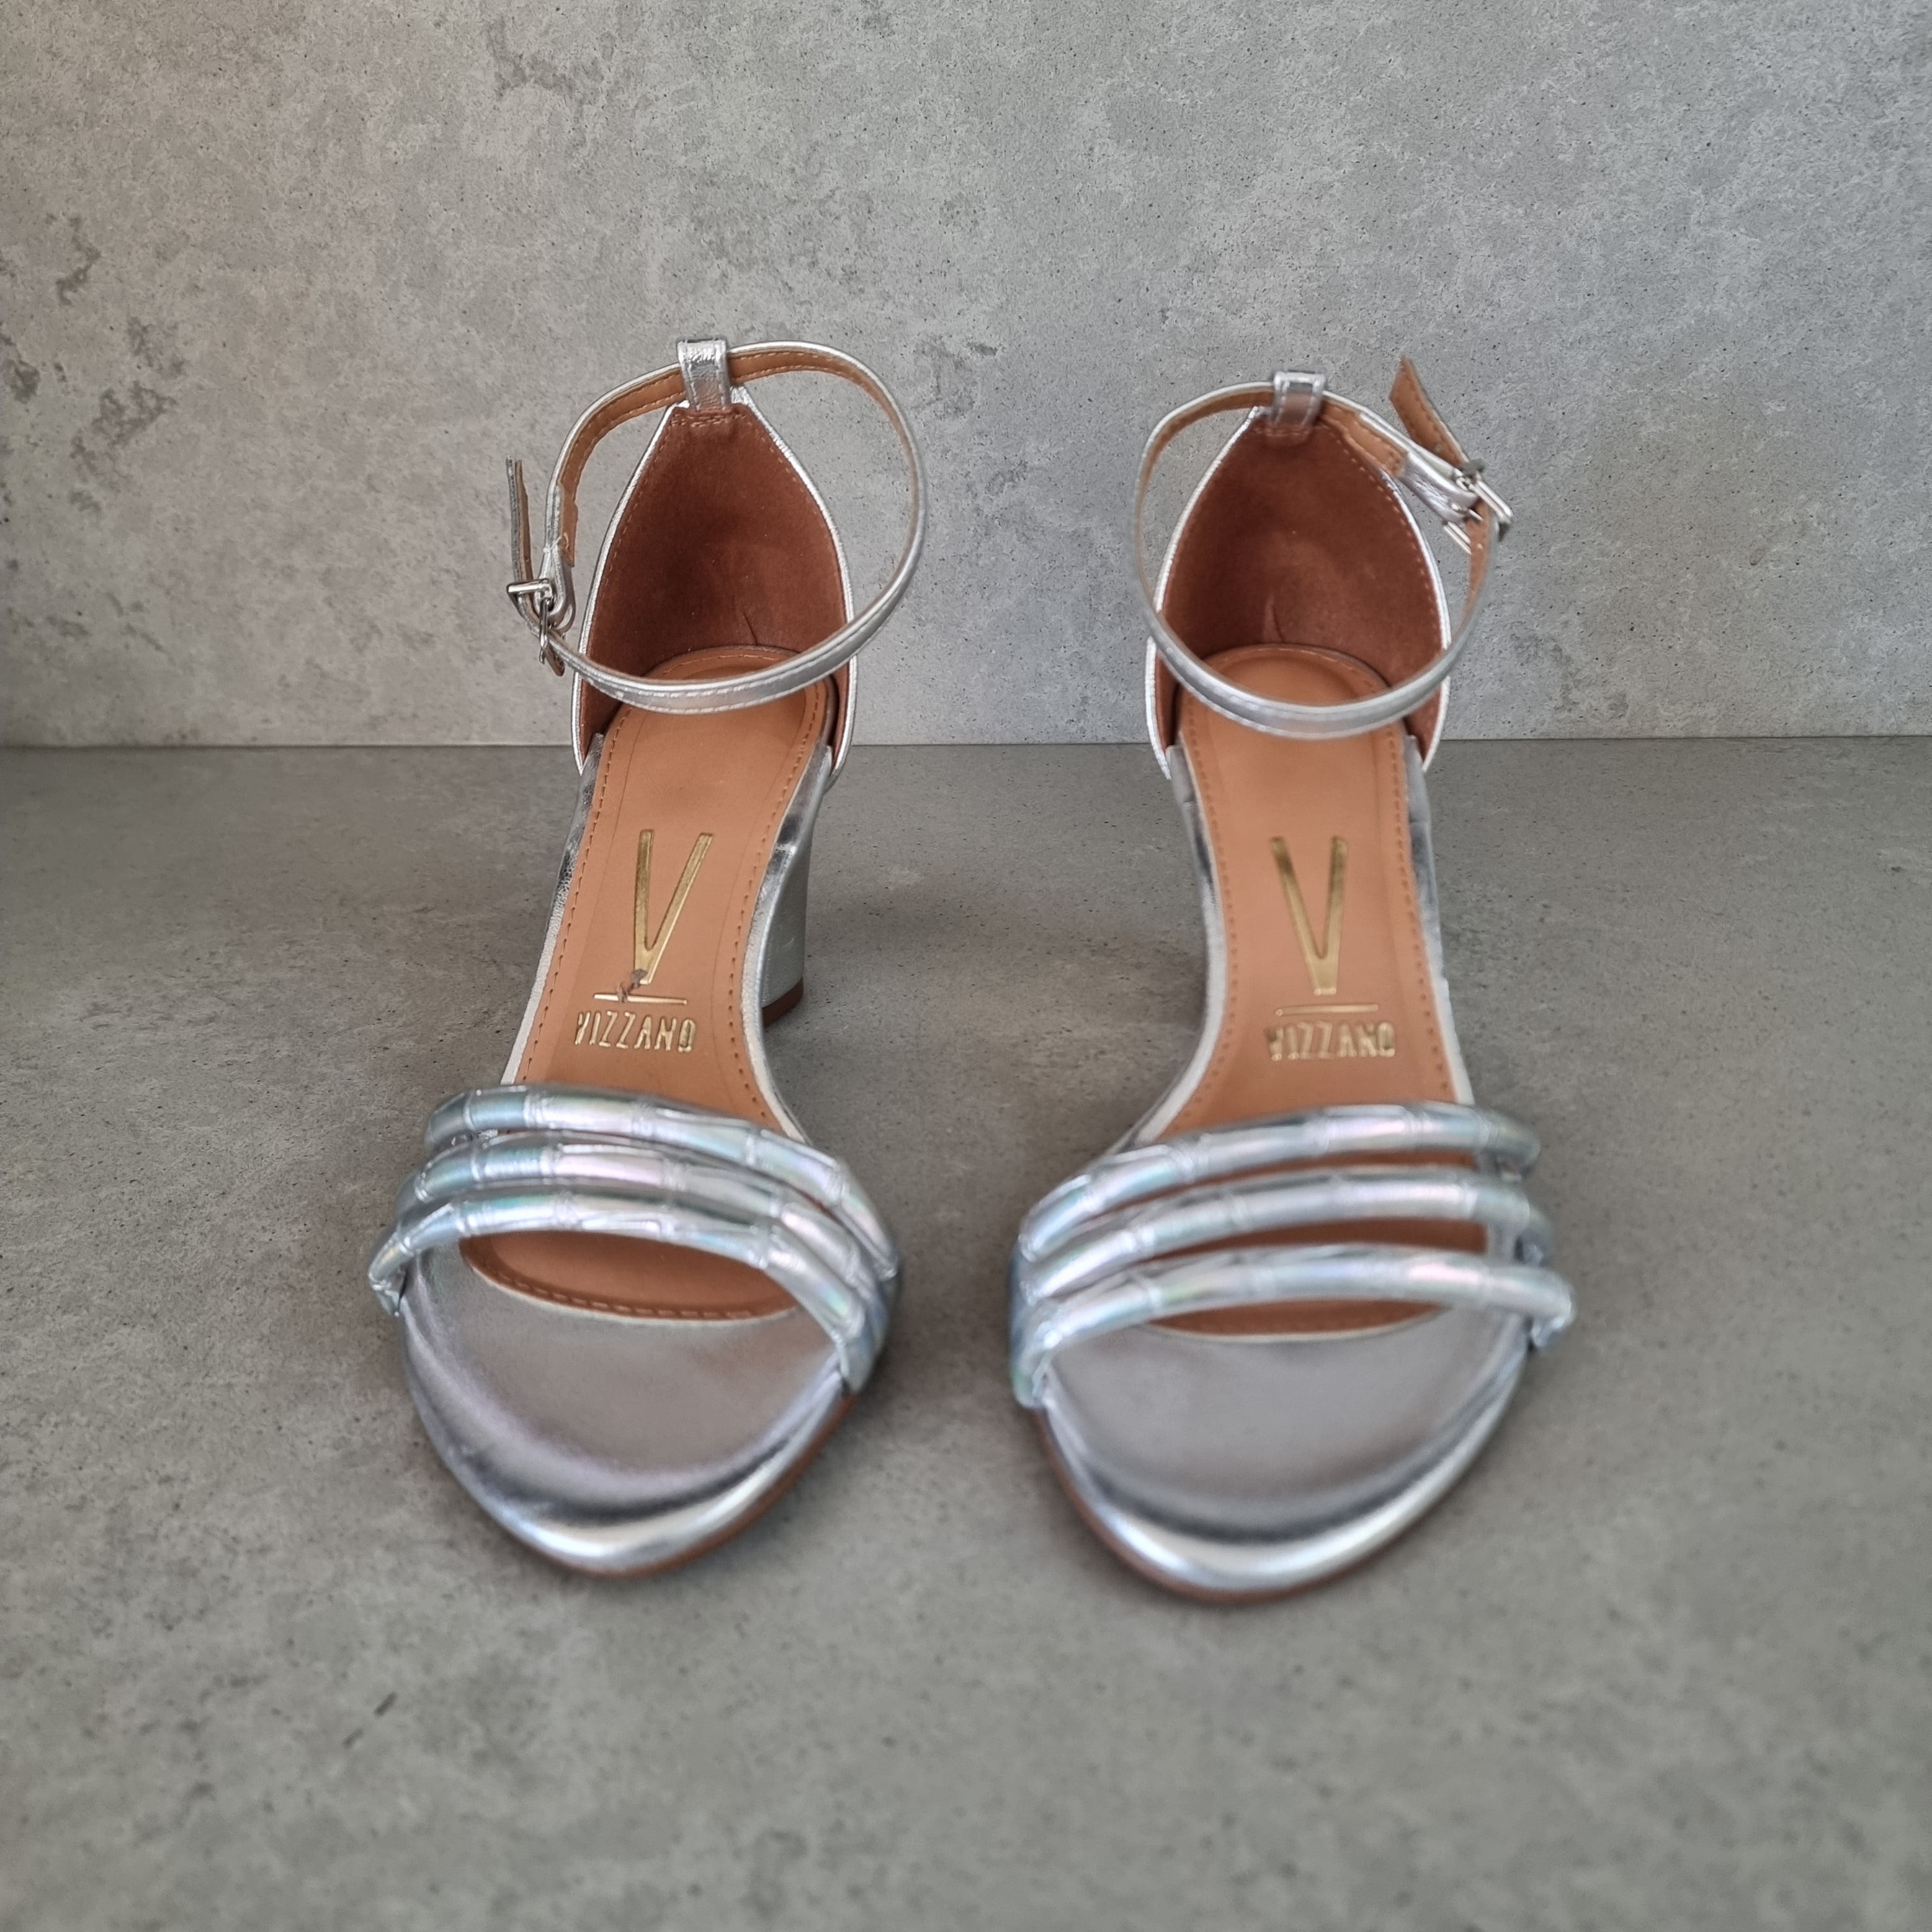 Vizzano 6262-1207 Block Heel Sandal in Silver